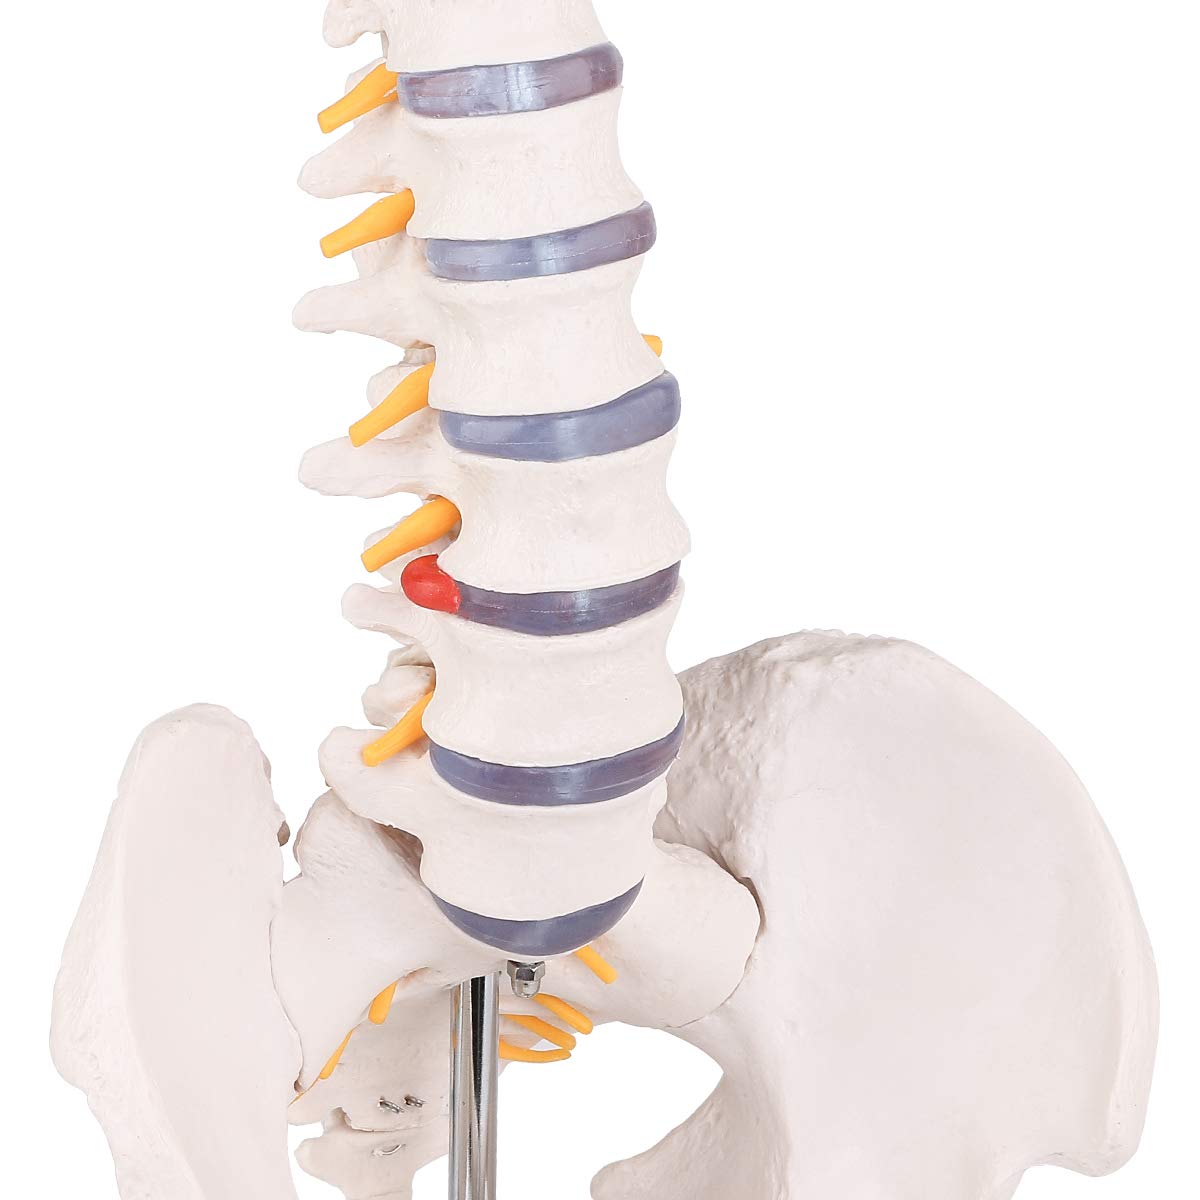 Human Spine Model,31"Human Spine Model, medical school,display model,demonstration model,skeleton Model,RONTEN